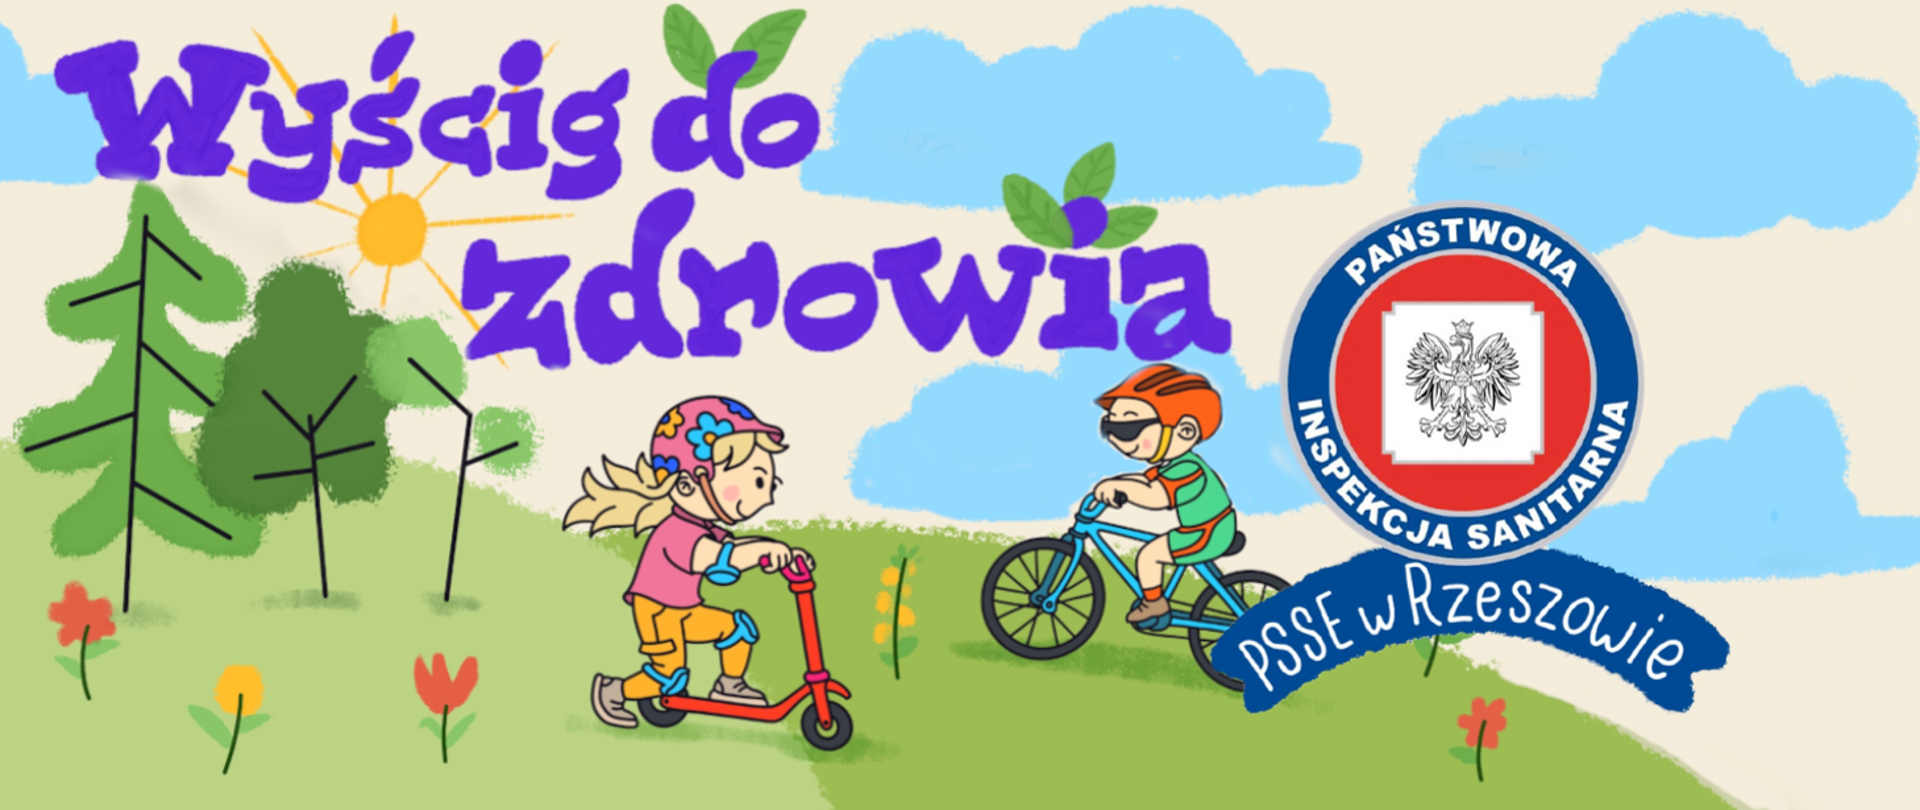 Dwójka dzieci podczas aktywności fizycznej. Dziewczynka jeździ na hulajnodze, a chłopiec na rowerze. po lewej stronie stronie na górze napis: "Wyścig do zdrowia", a po stronie prawej logo Państwowej Inspekcji Sanitarnej i podpisane PSSE w Rzeszowie